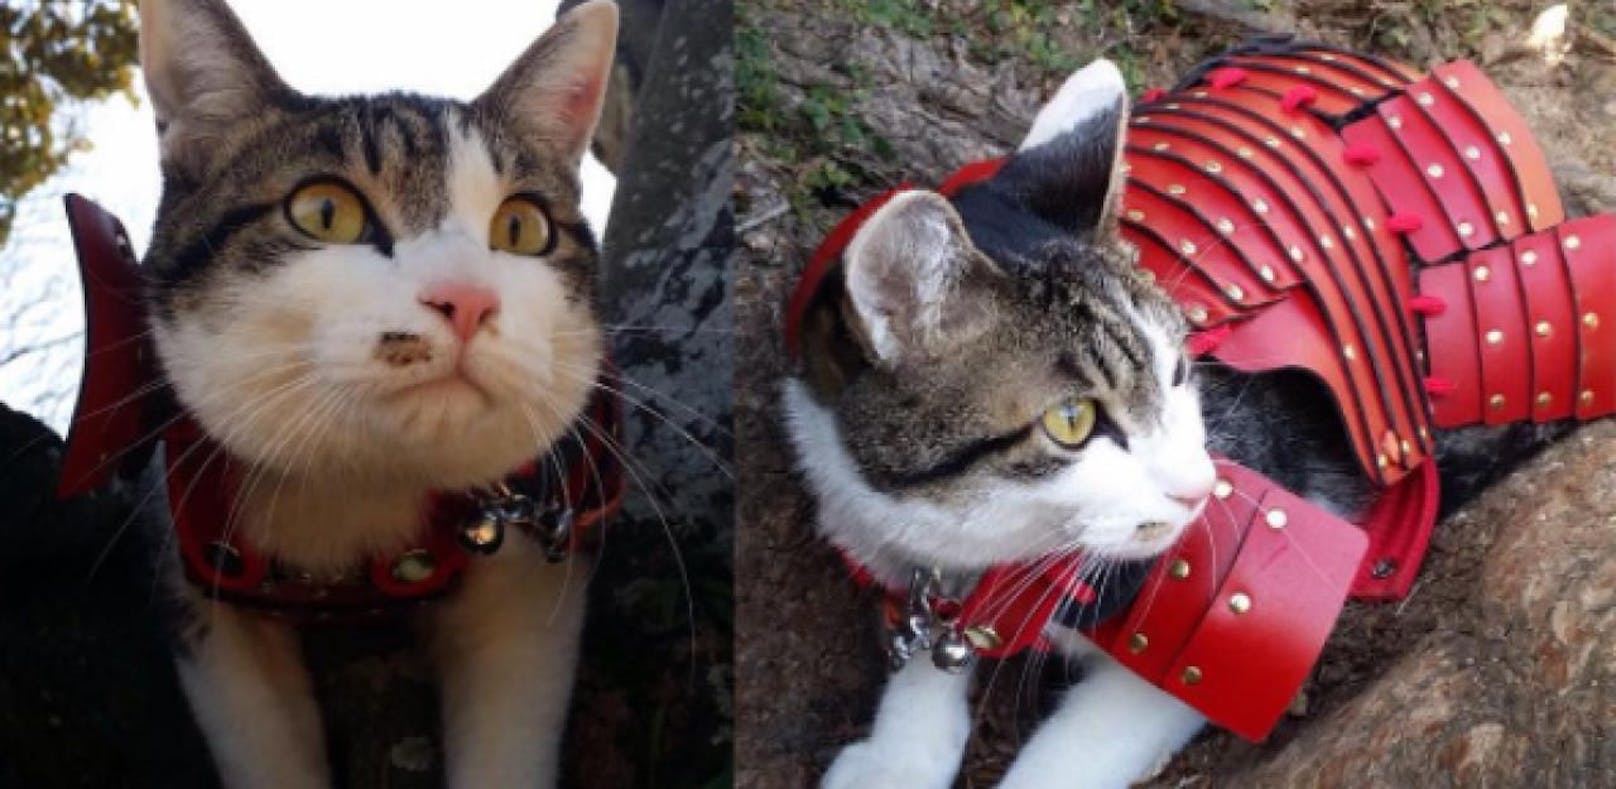 Samurai-Rüstungen für Katzen begeistern Netz